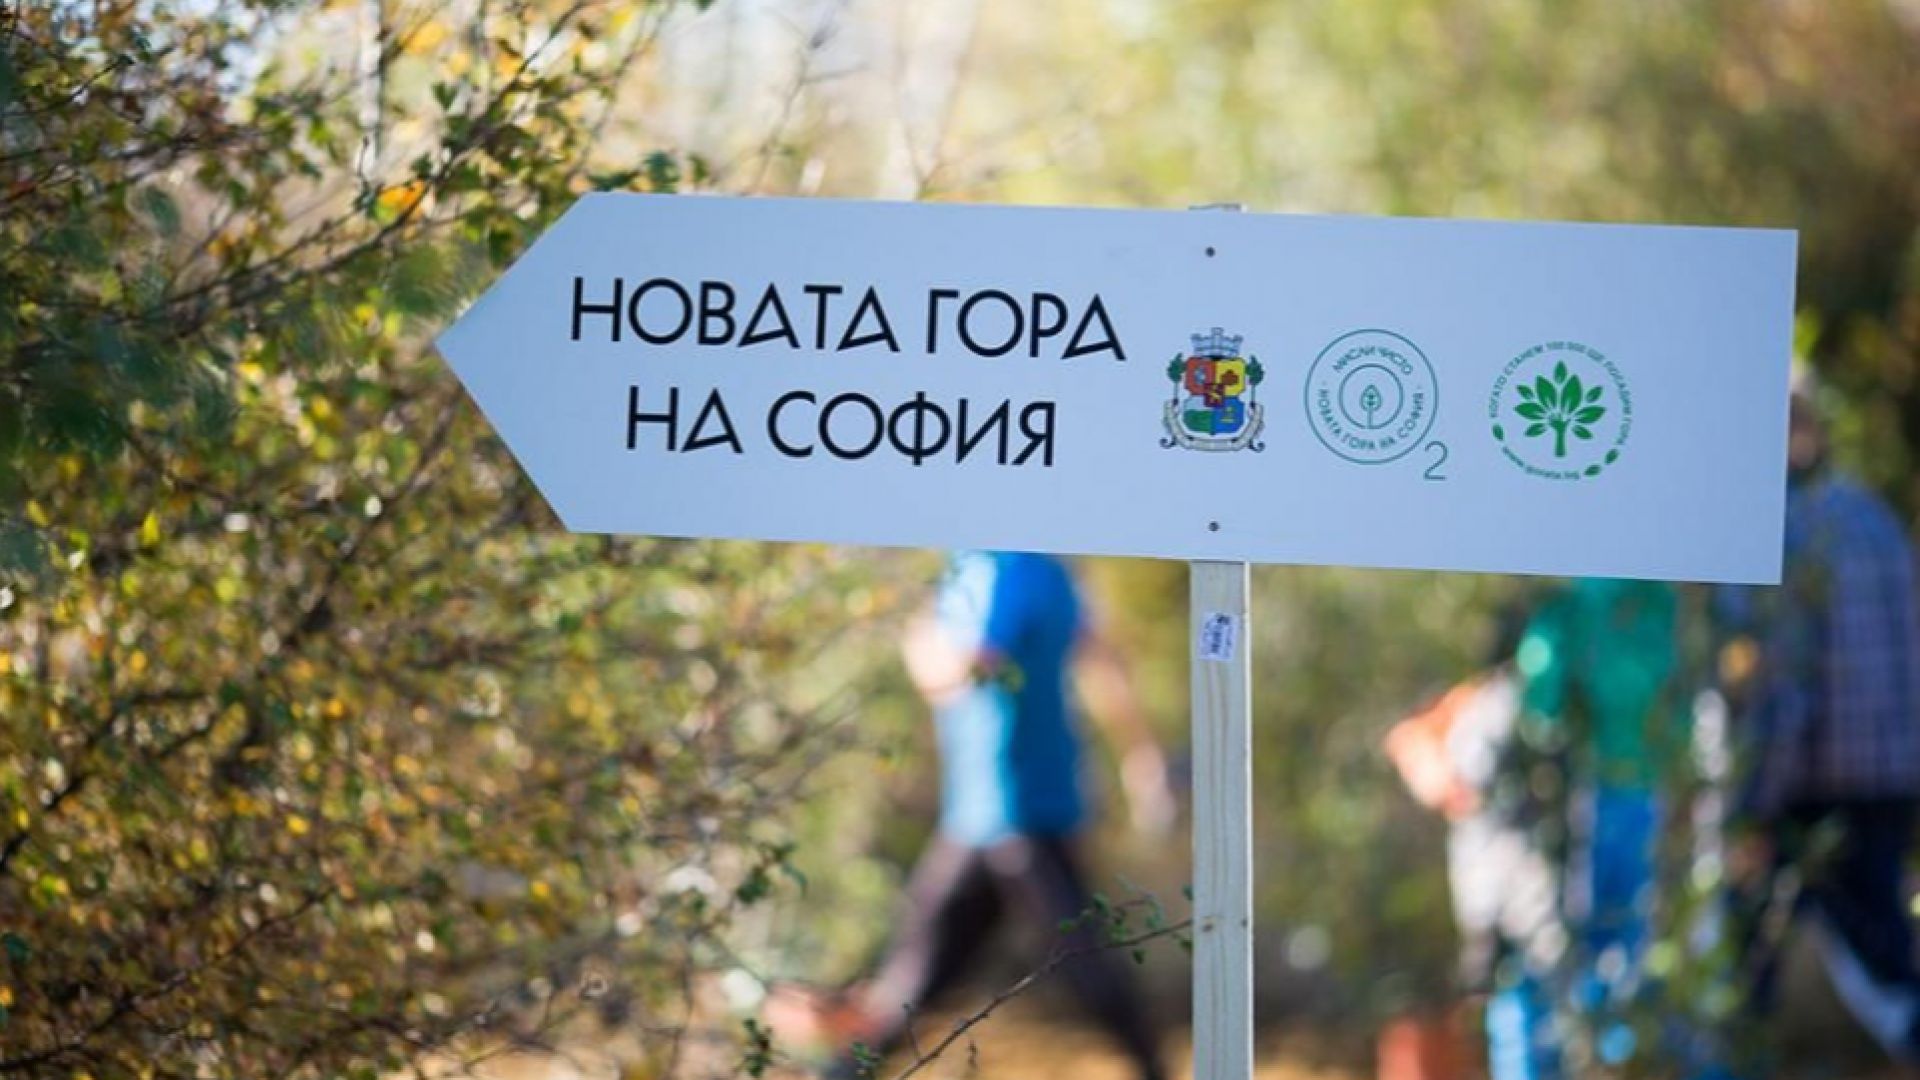 "Новата гора на София 2" - започва есенният залесителен сезон